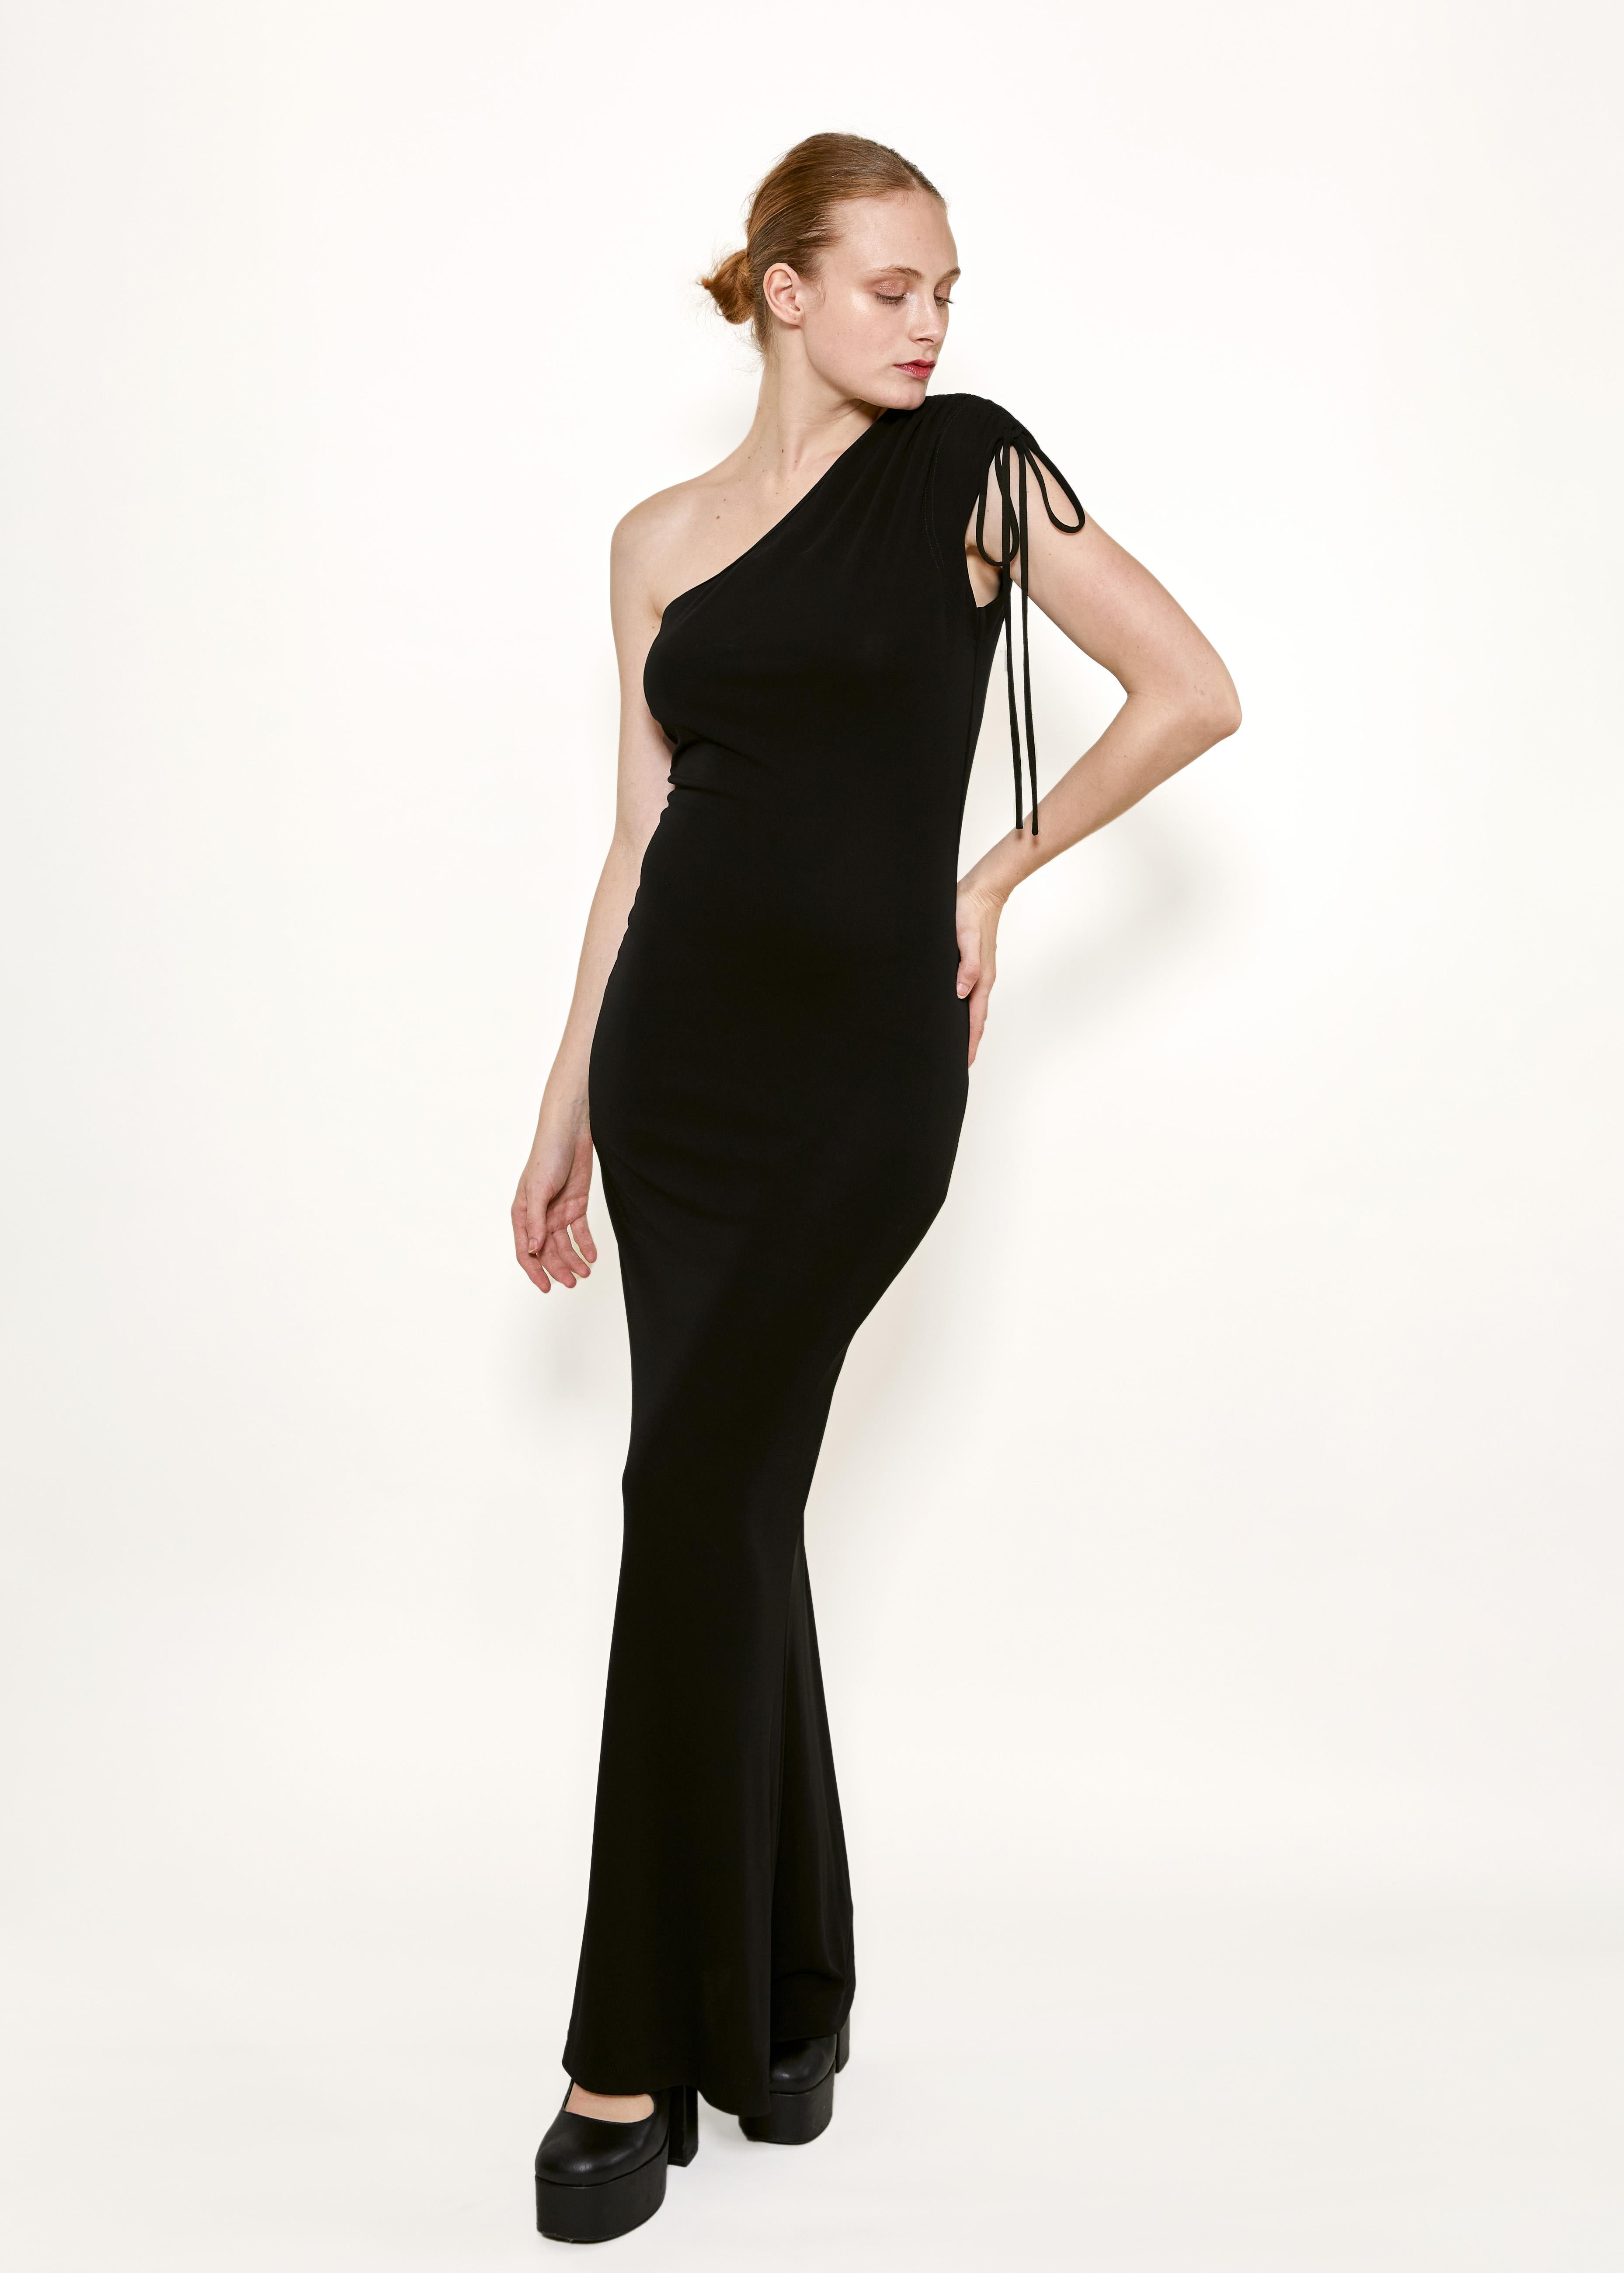 Schwelgen Sie in Luxus mit dem Vivienne Westwood Gold Label Black Jersey One Shoulder Dress. Dieses Couture-Teil hat eine Schulterpartie mit Kordelzug für einen einzigartigen Touch, während die Maxilänge für Anmut und Eleganz sorgt. Der Jersey-Stoff